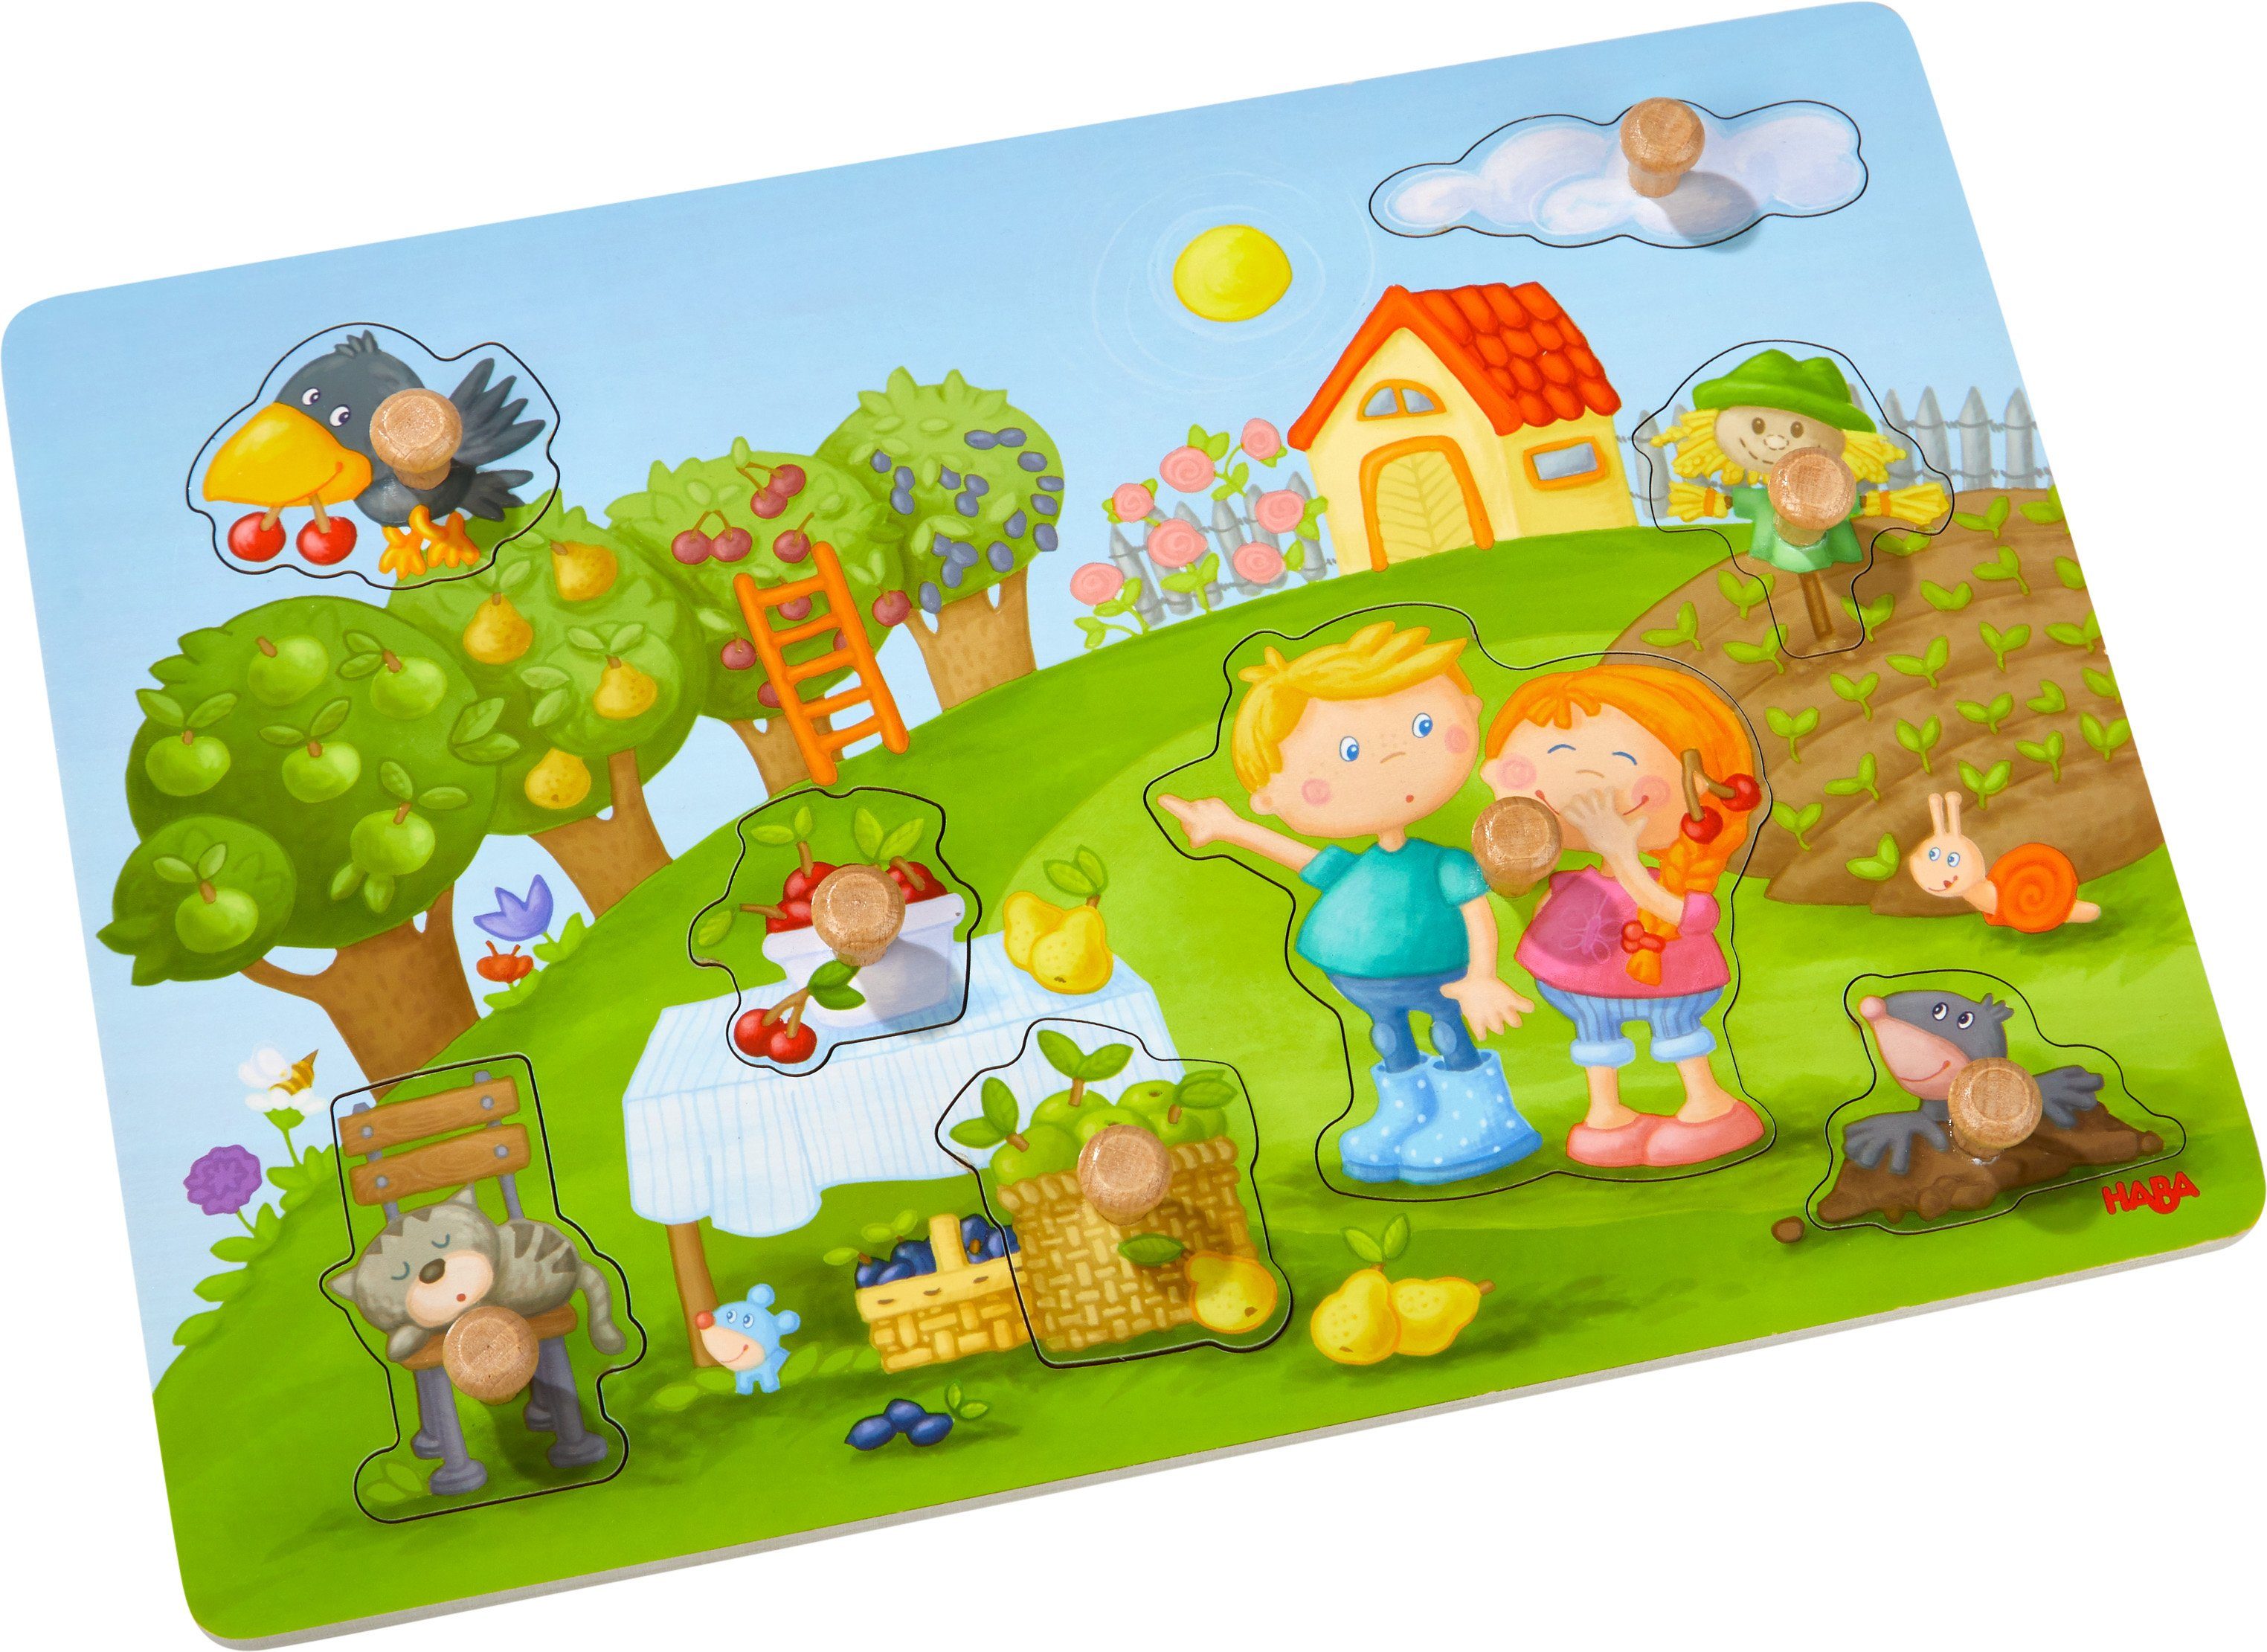 Haba Steckpuzzle Holzspielzeug, Obstgarten, 8 Puzzleteile | Puzzle